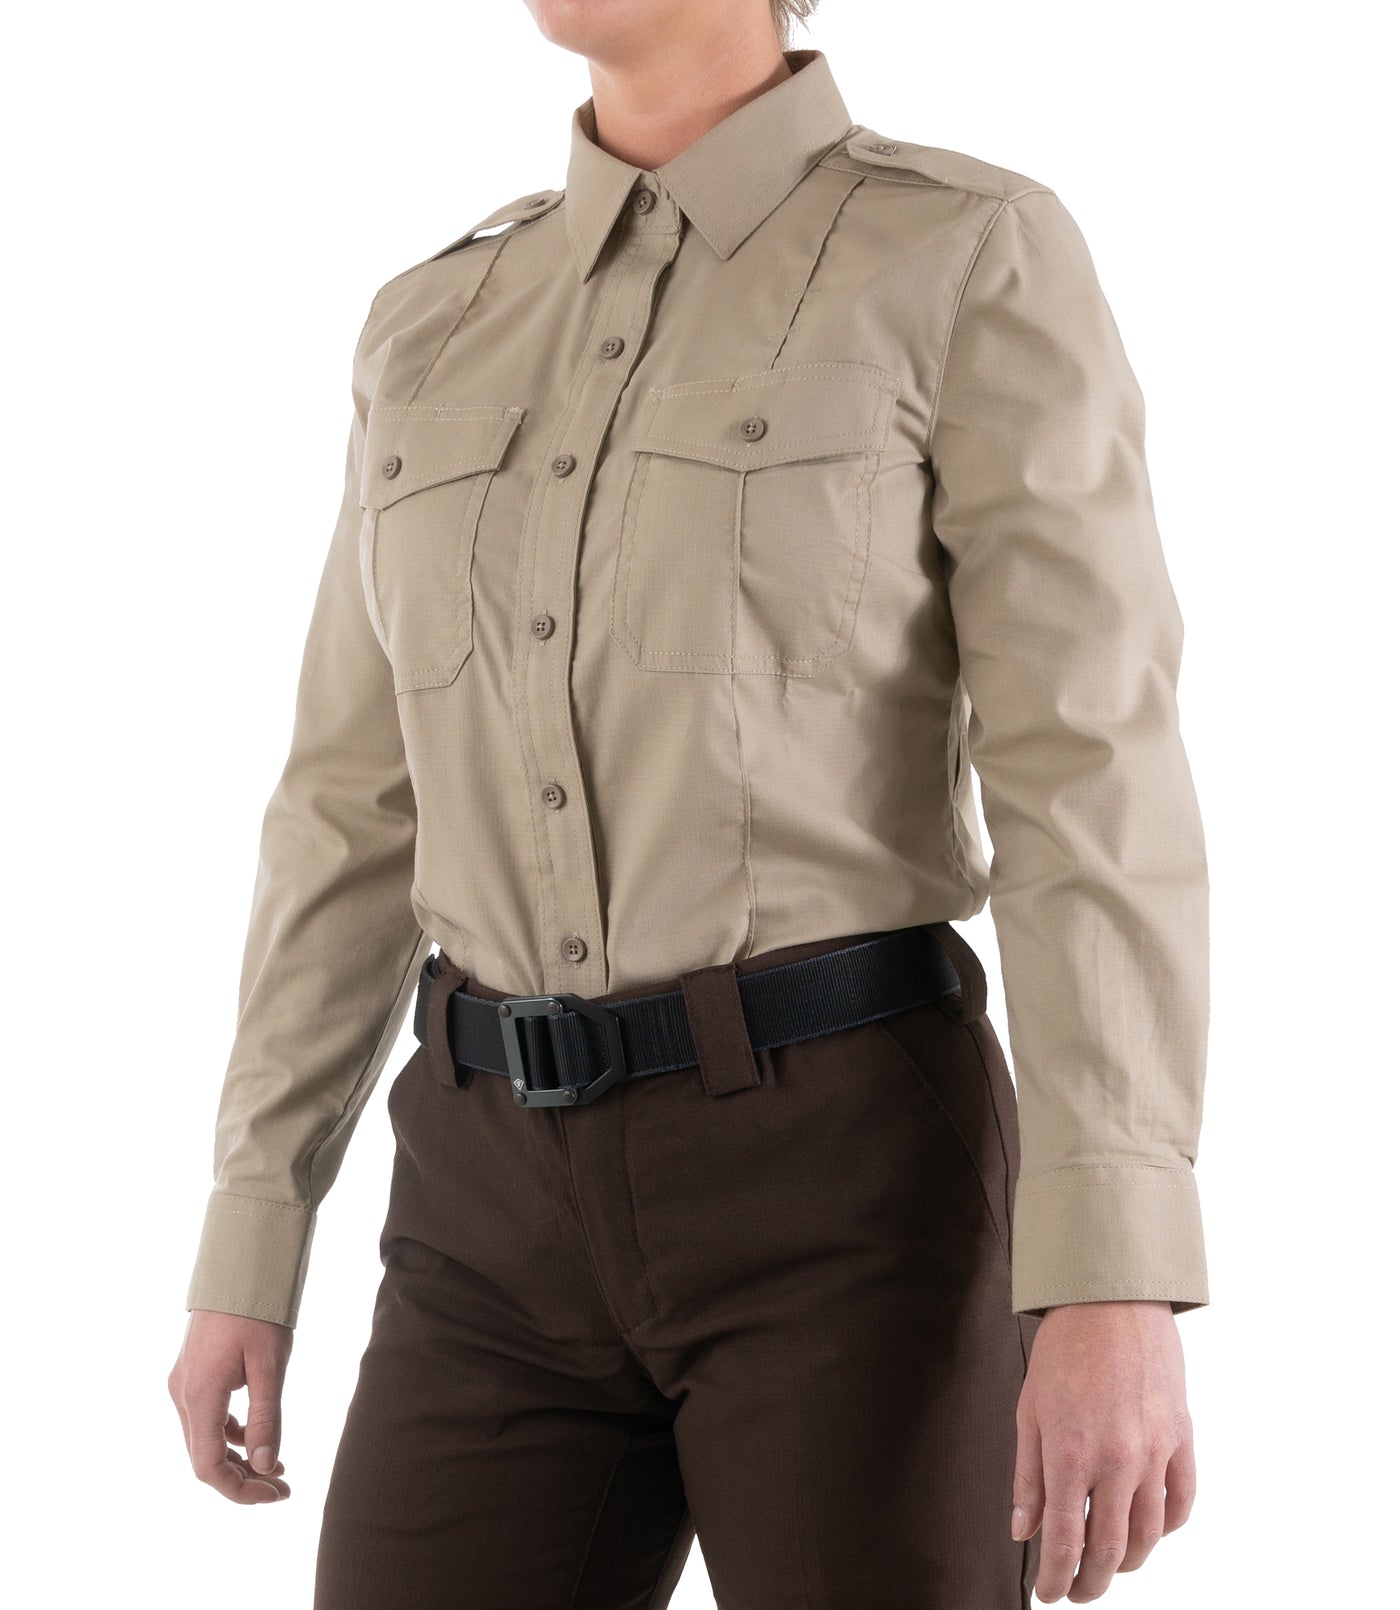 Side of Women's Pro Duty Uniform Shirt in Silver Tan